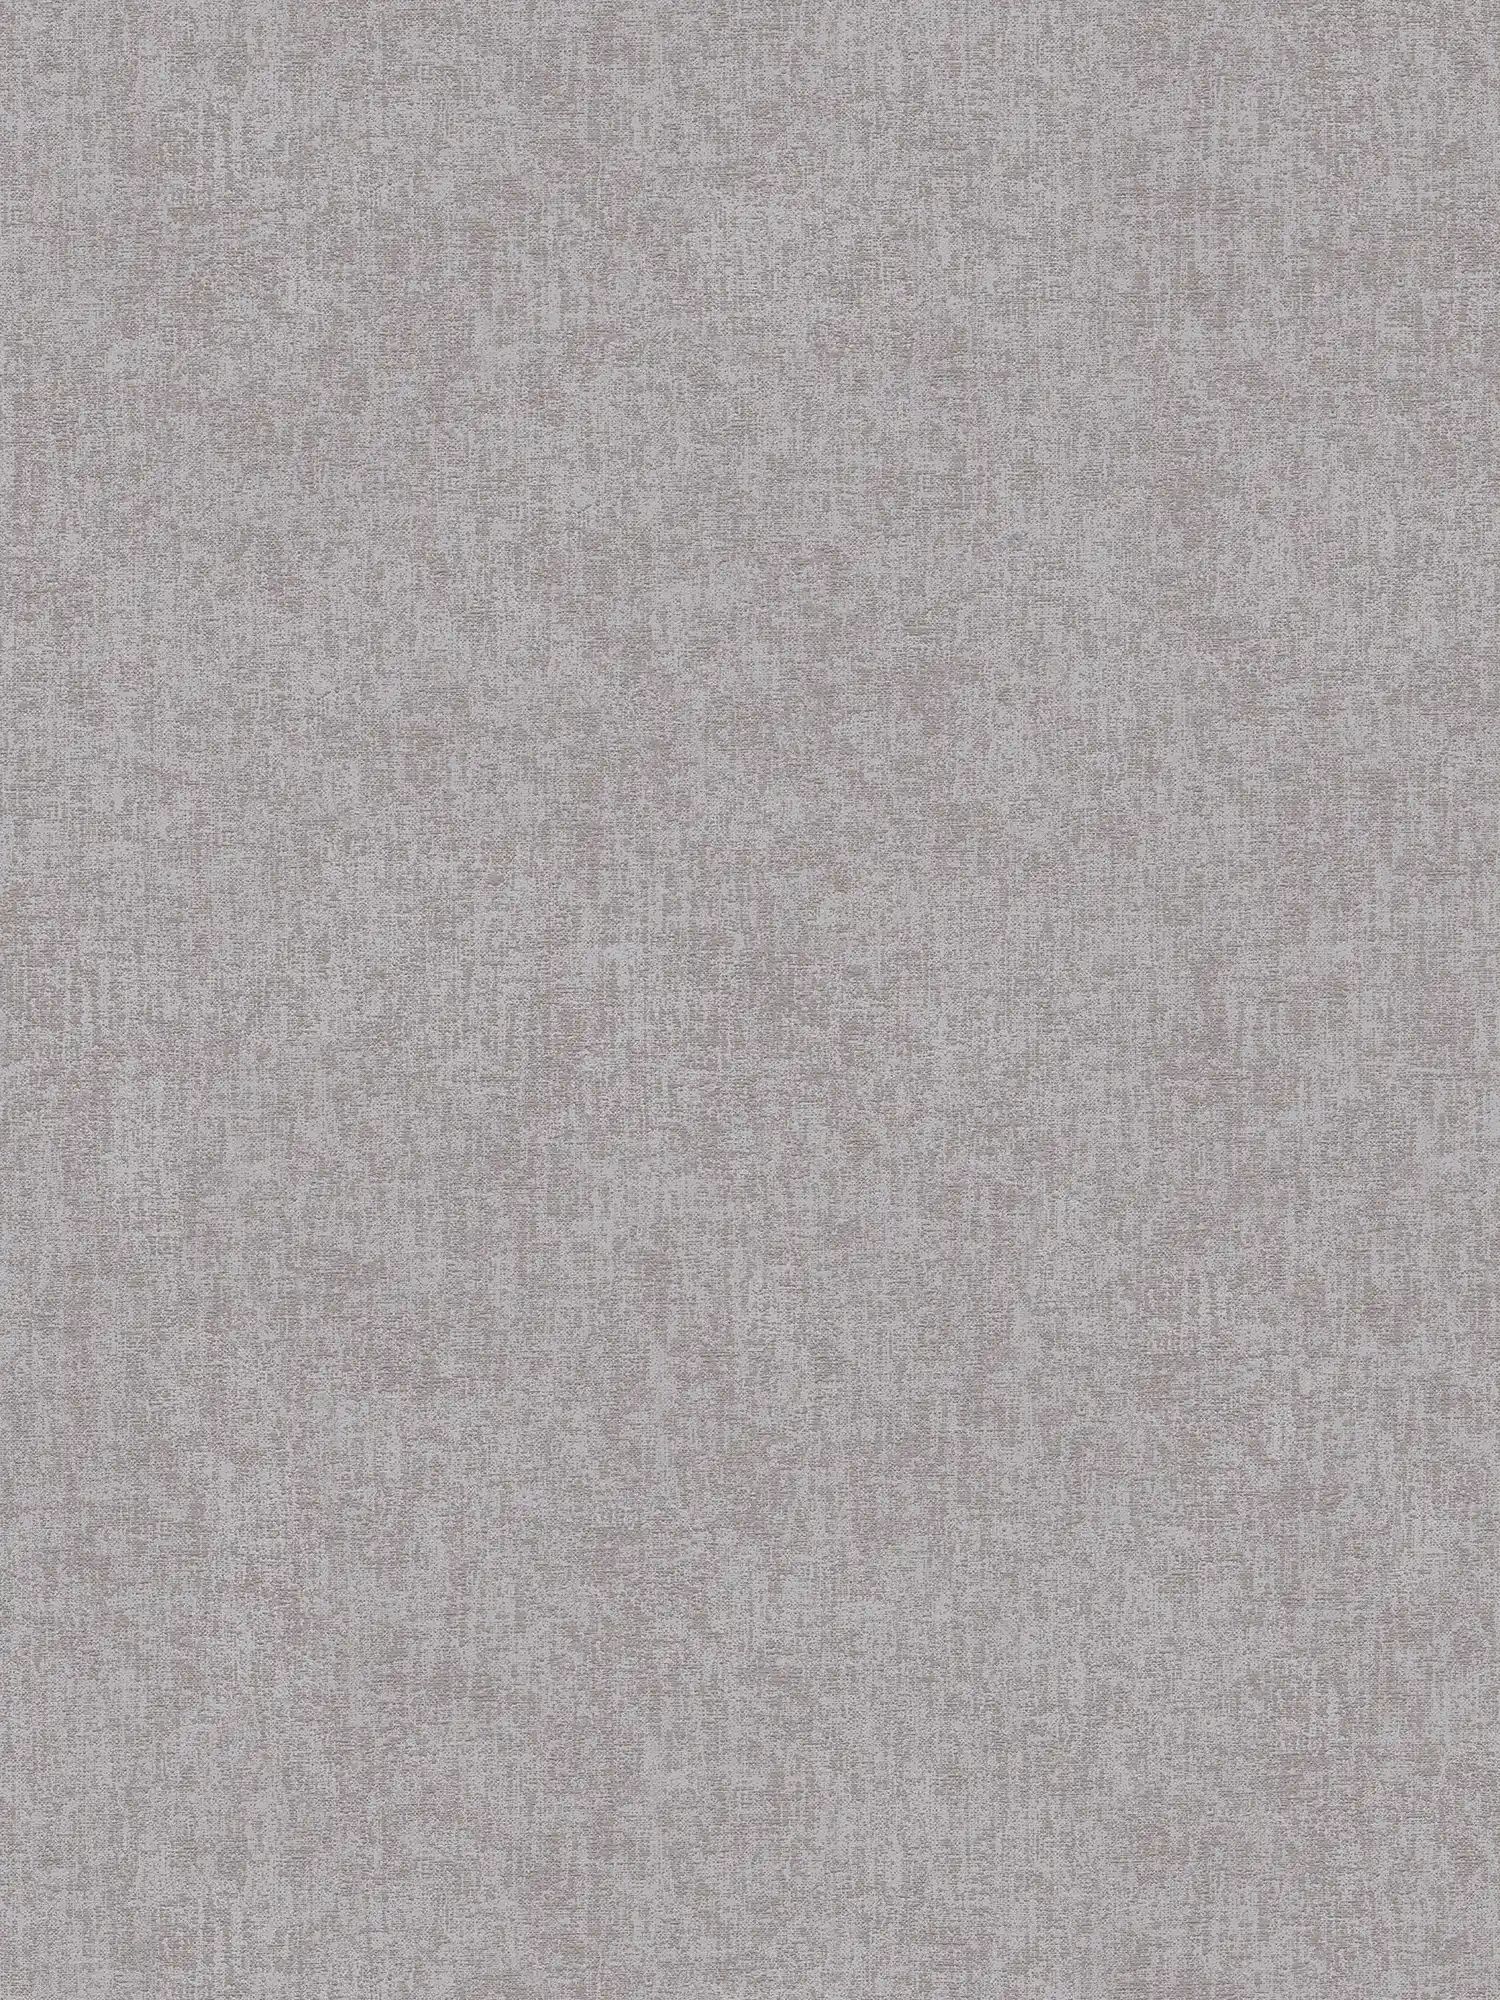 Papier peint uni chiné avec aspect textile - gris, marron
